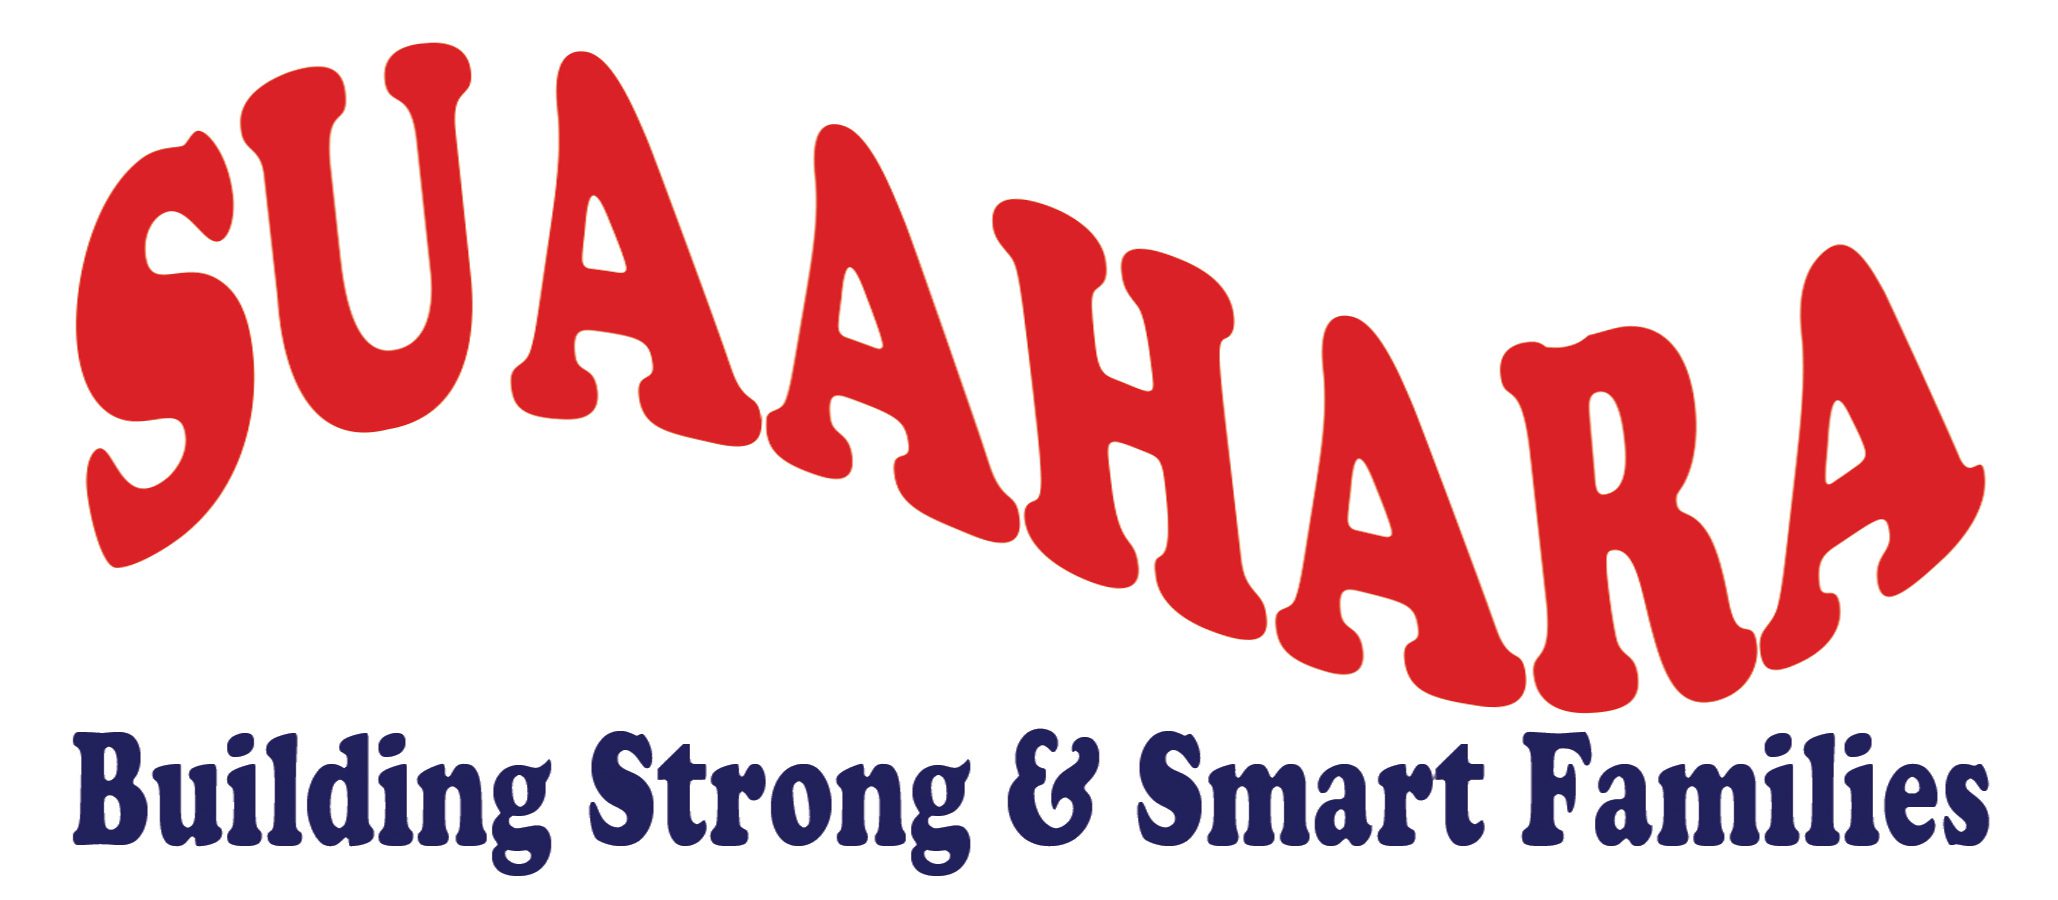 The logo for the Suaahara Program